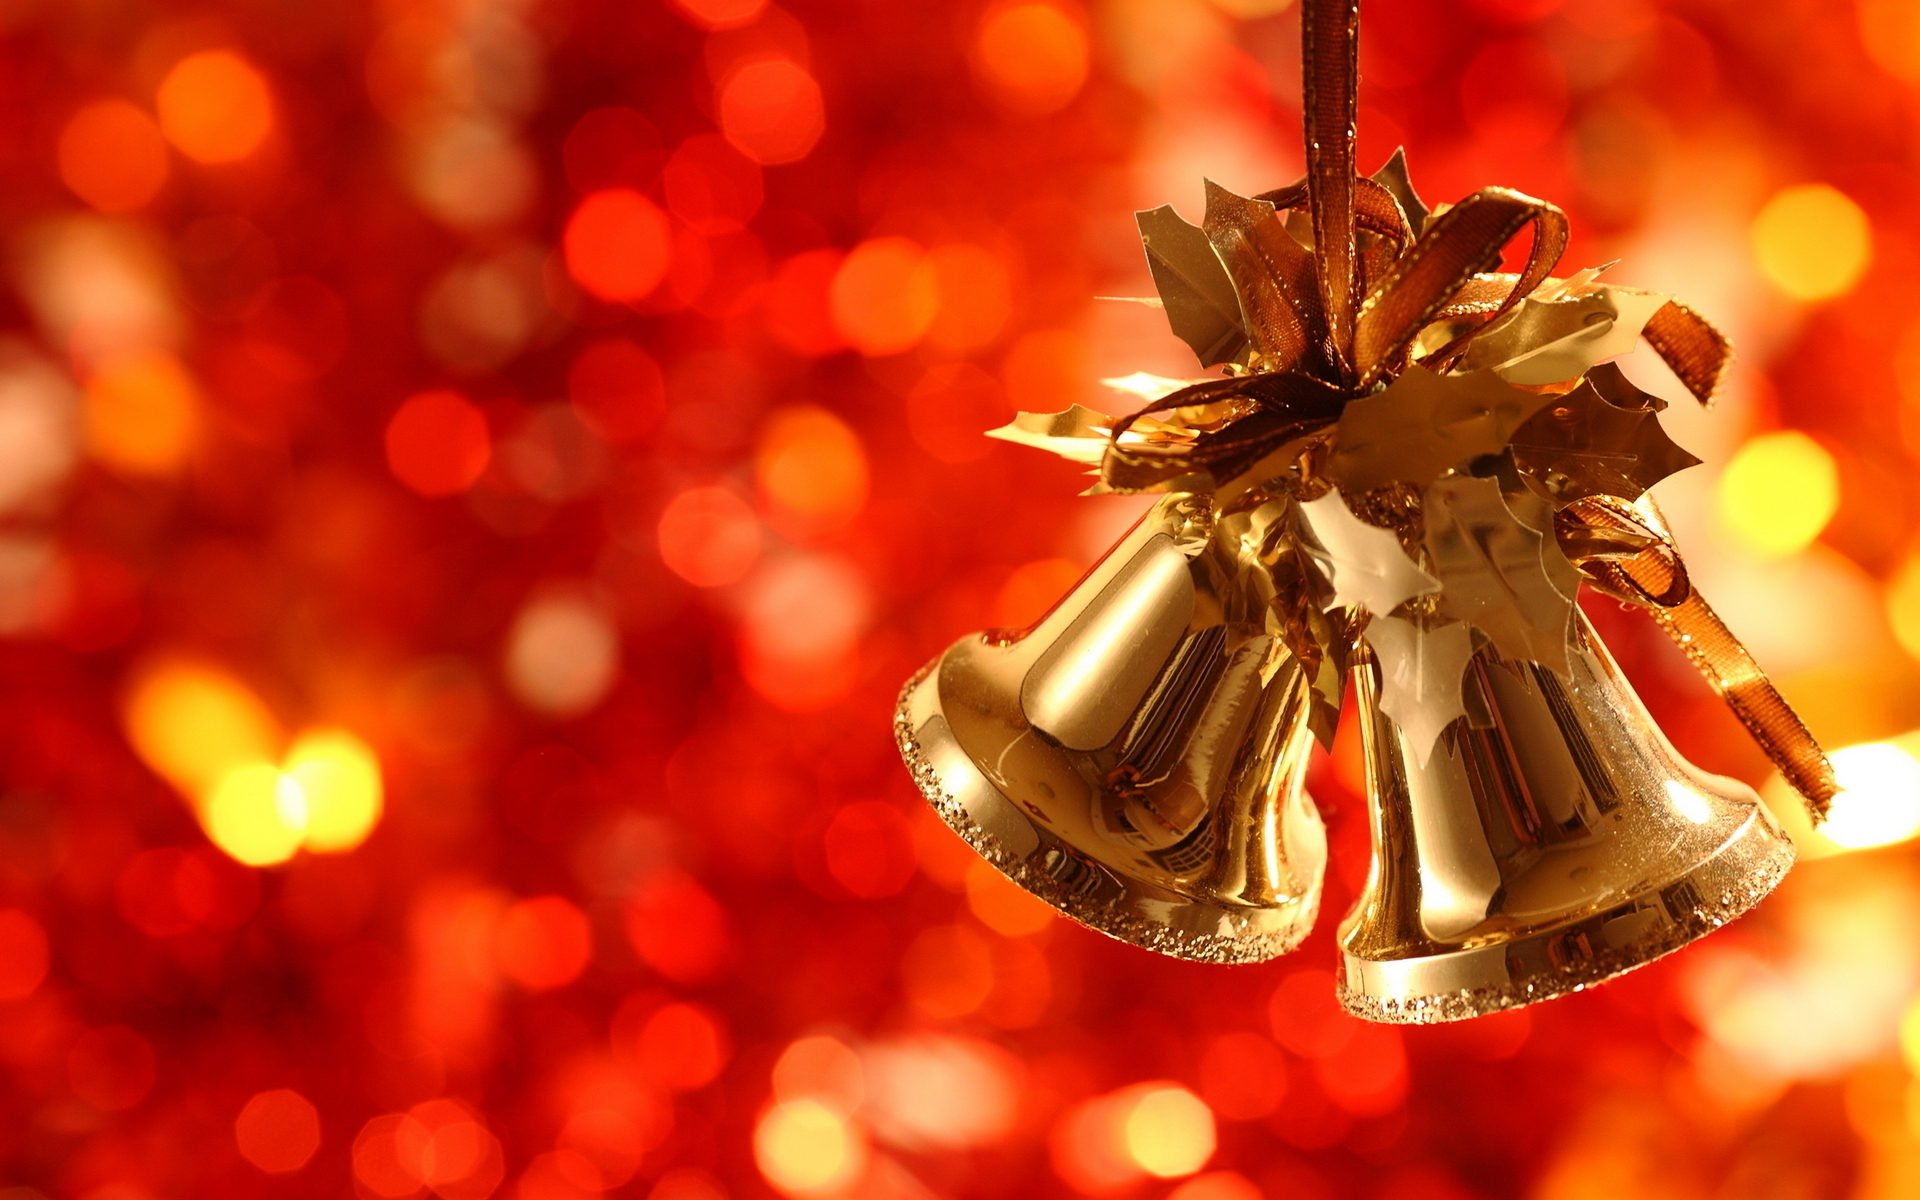 Скачать обои бесплатно Праздники, Рождество (Christmas Xmas), Колокольчики, Новый Год (New Year) картинка на рабочий стол ПК